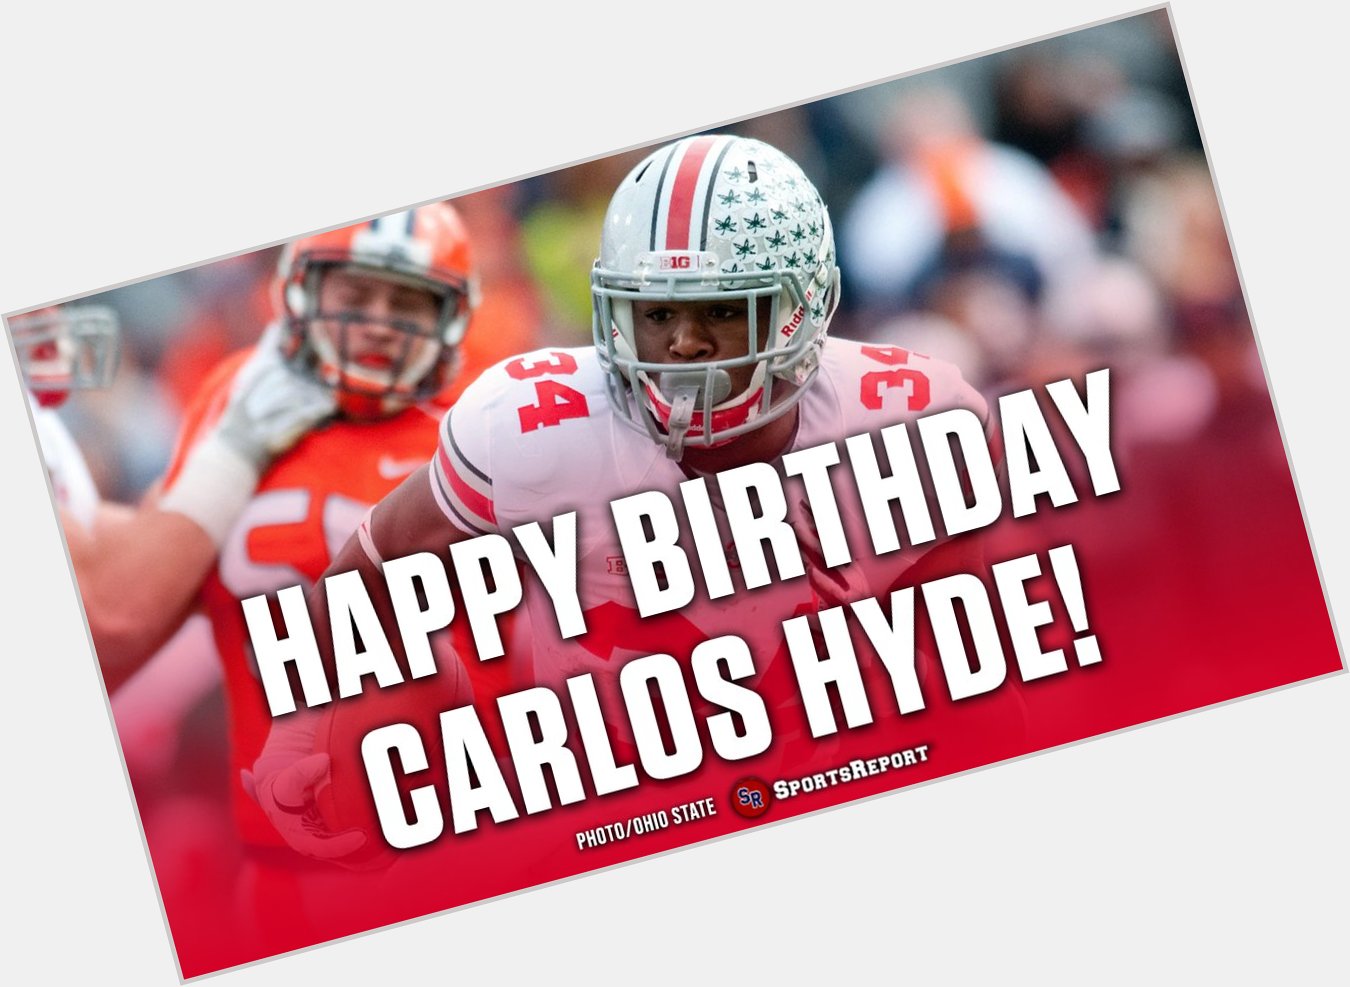  Fans, let\s wish Carlos Hyde a Happy Birthday! GO 